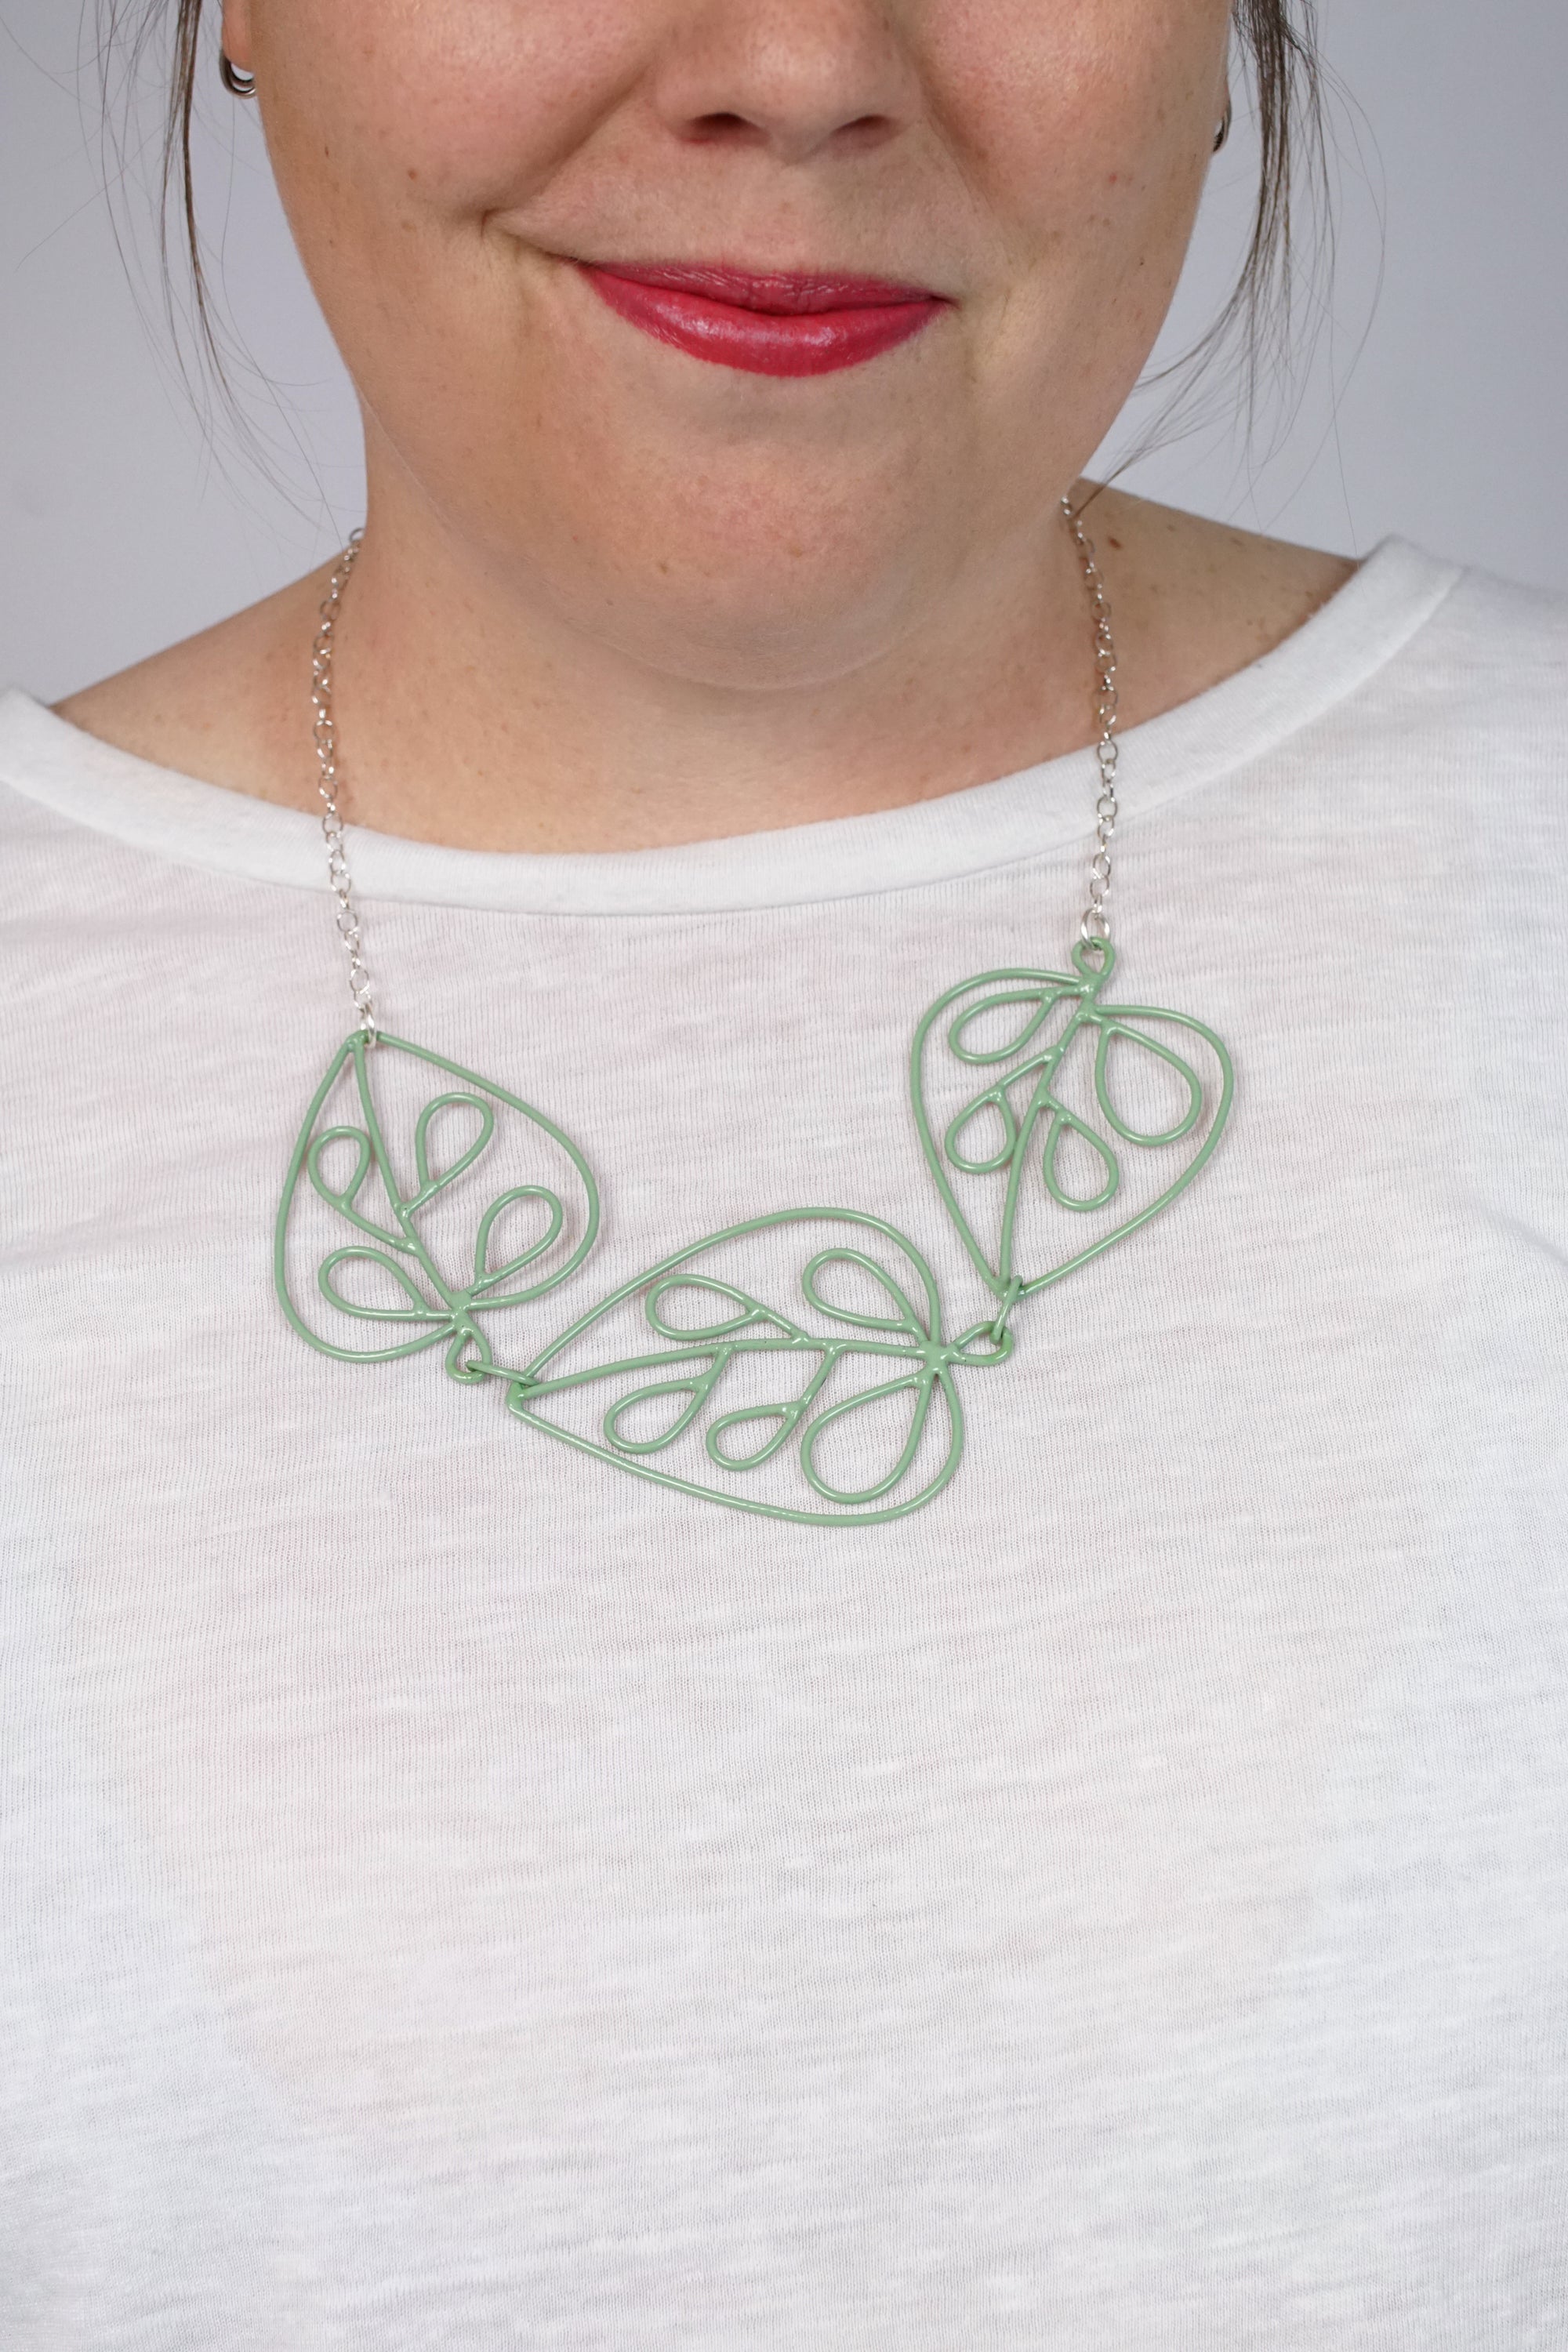 Triple Ada Necklace in Pale Green